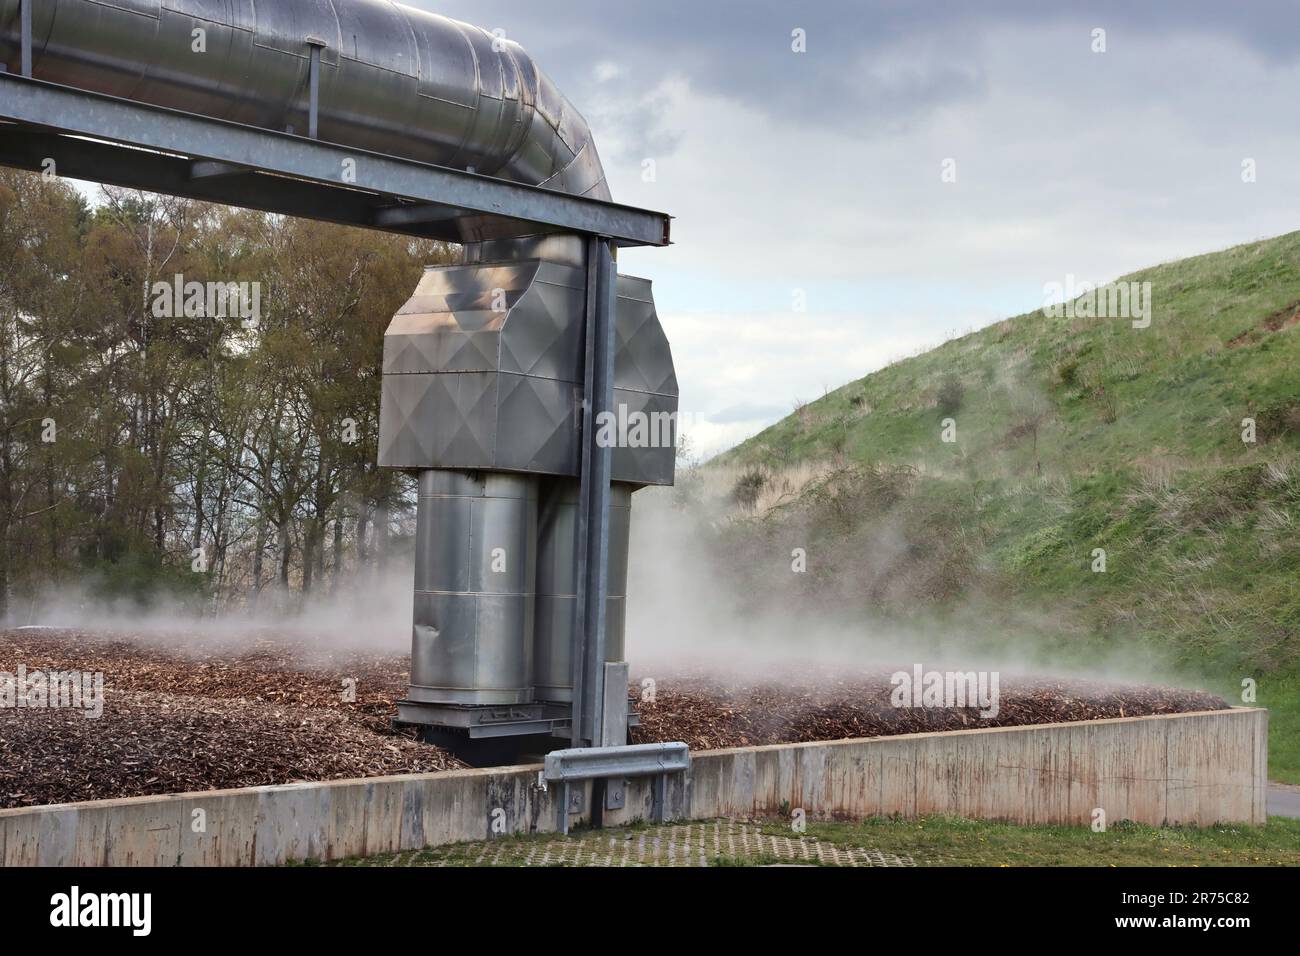 Système de biofiltre pour la réduction des odeurs dans le centre de gestion des déchets Kreis Euskirchen, Allemagne, Rhénanie-du-Nord-Westphalie, Mechernich Banque D'Images